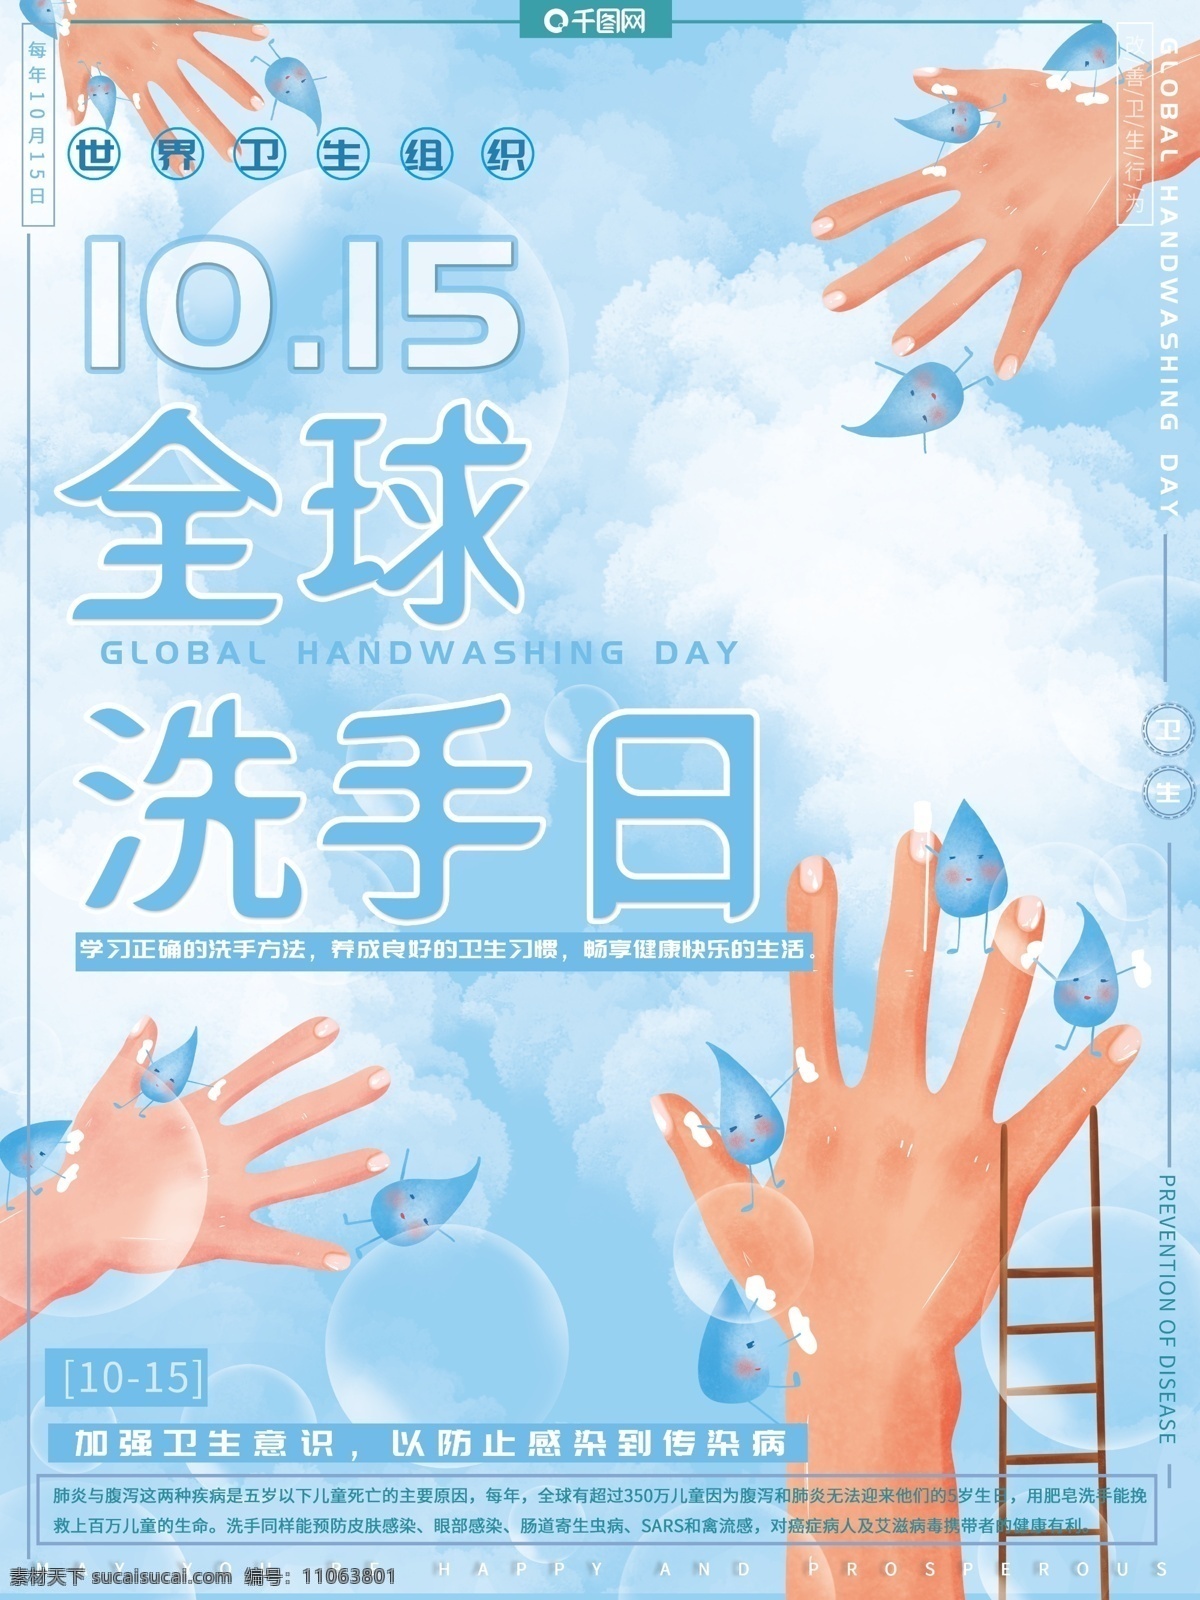 原创 手绘 小 清新 全球 洗手 日 预防 疾病 公益 海报 小清新 全球洗手日 预防疾病 公益海报